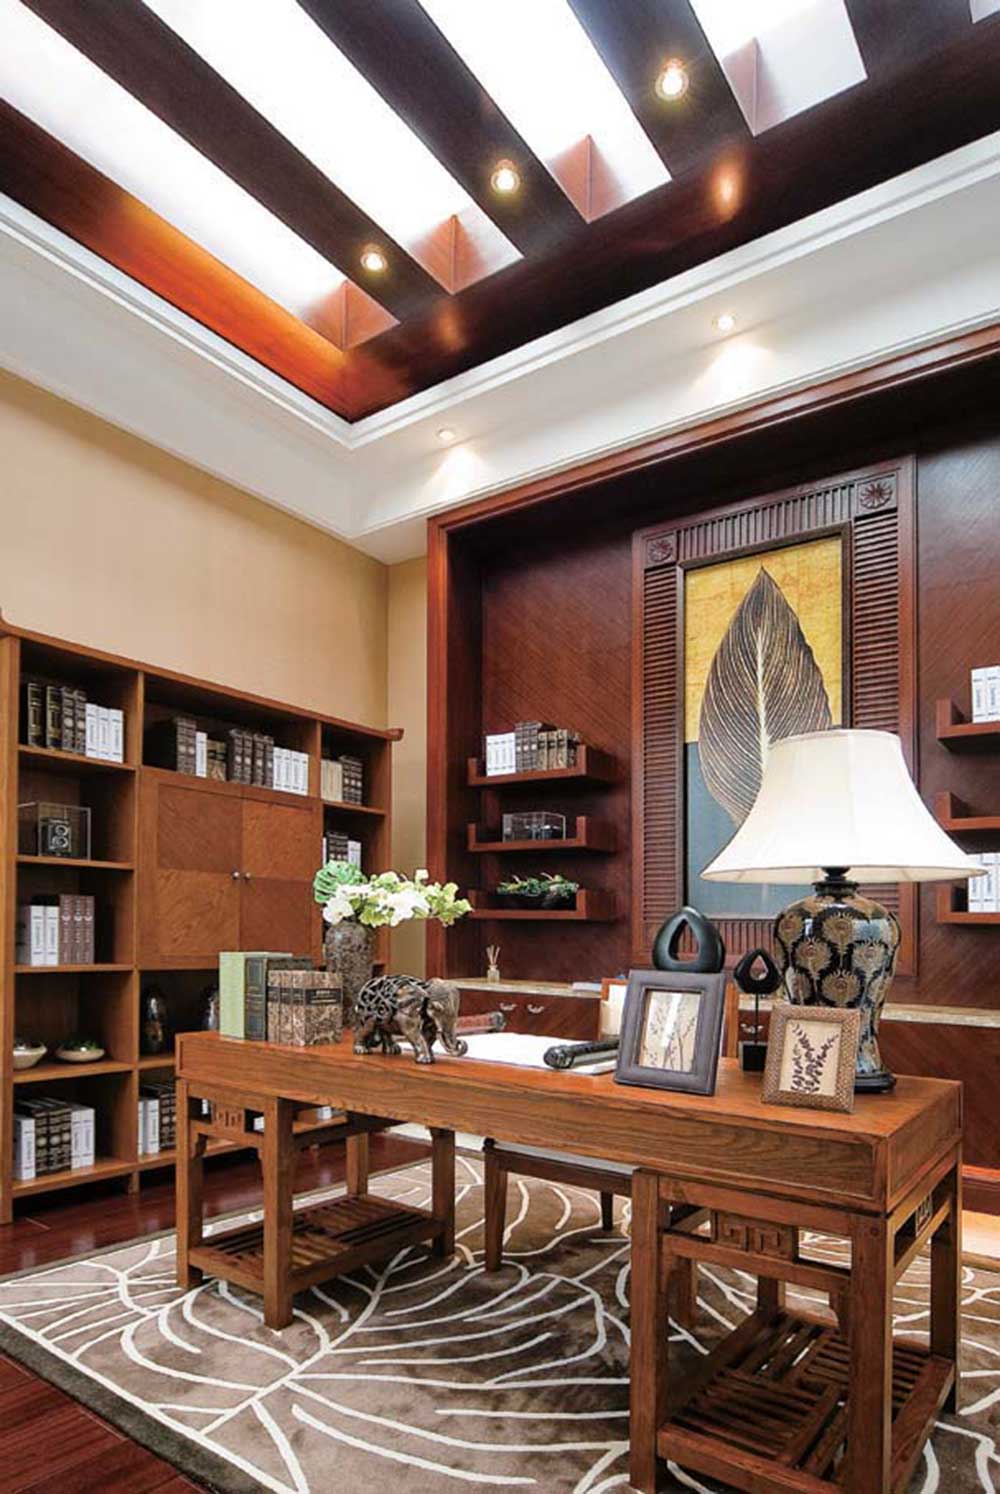 书房里的书桌、书架以及背景墙全由木质家居装饰，古色古香。另外书房的房顶由玻璃铺设，极大的改善了采光条件。